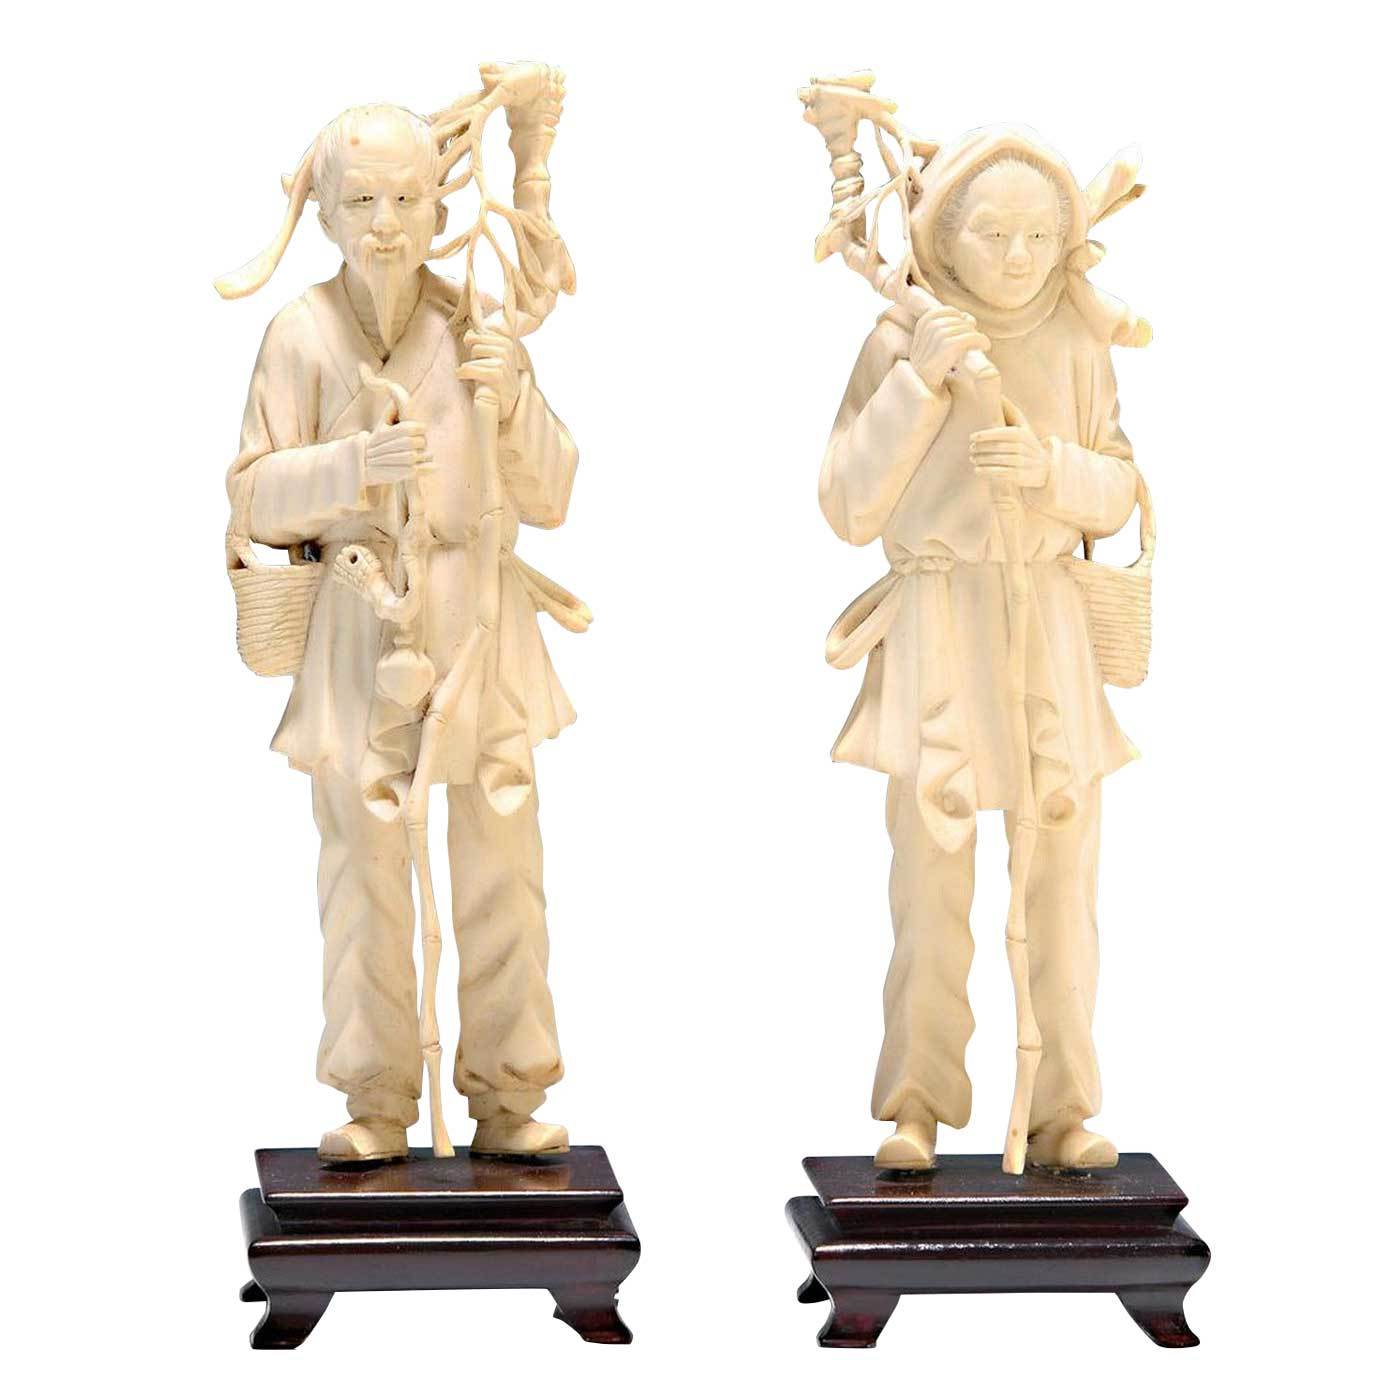  asiatika-Elfenbeinfiguren-Paar.jpg